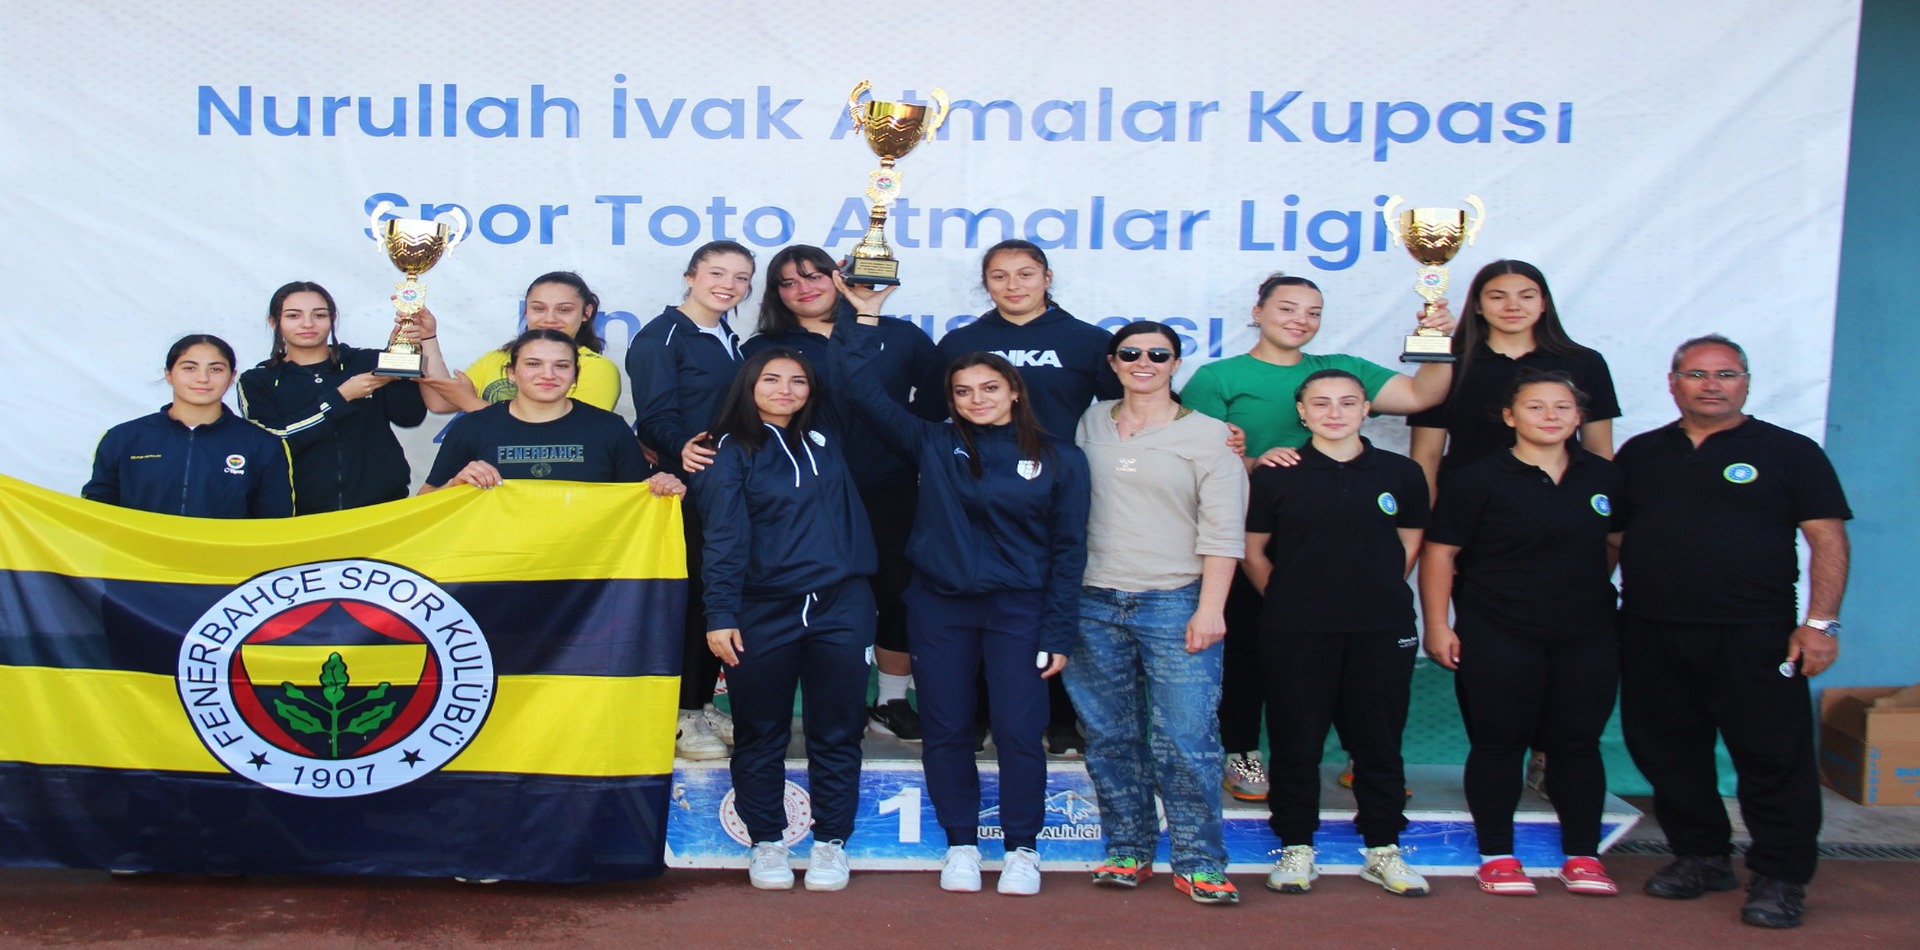 Nurullah İvak Atmalar Kupası Bursa